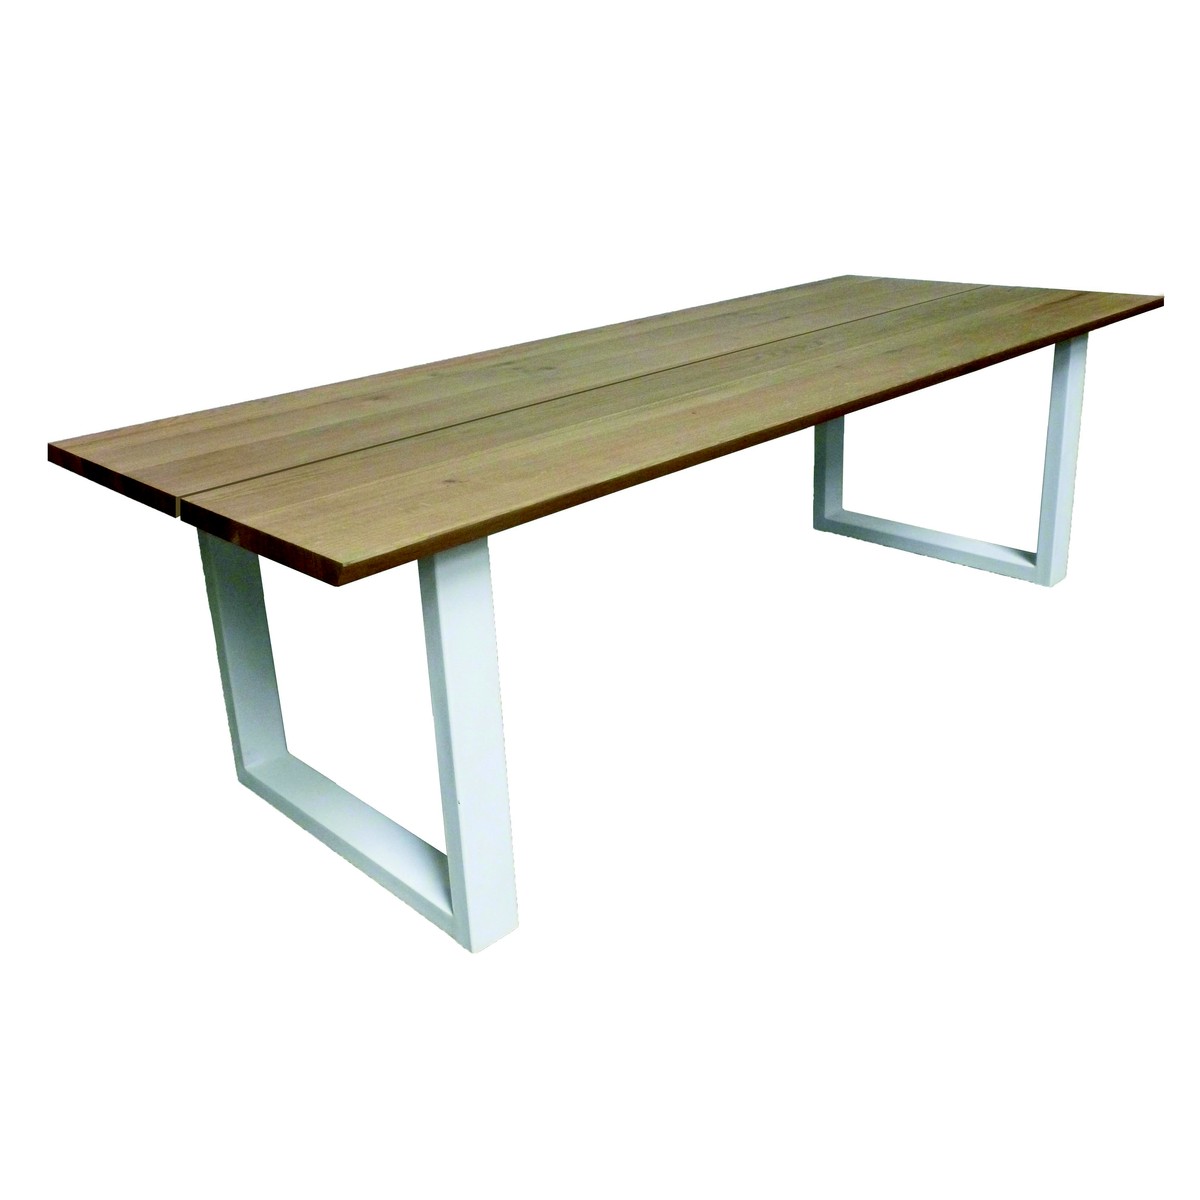   Table Foss Droit ouvert rectangulaire  160x100x77cm